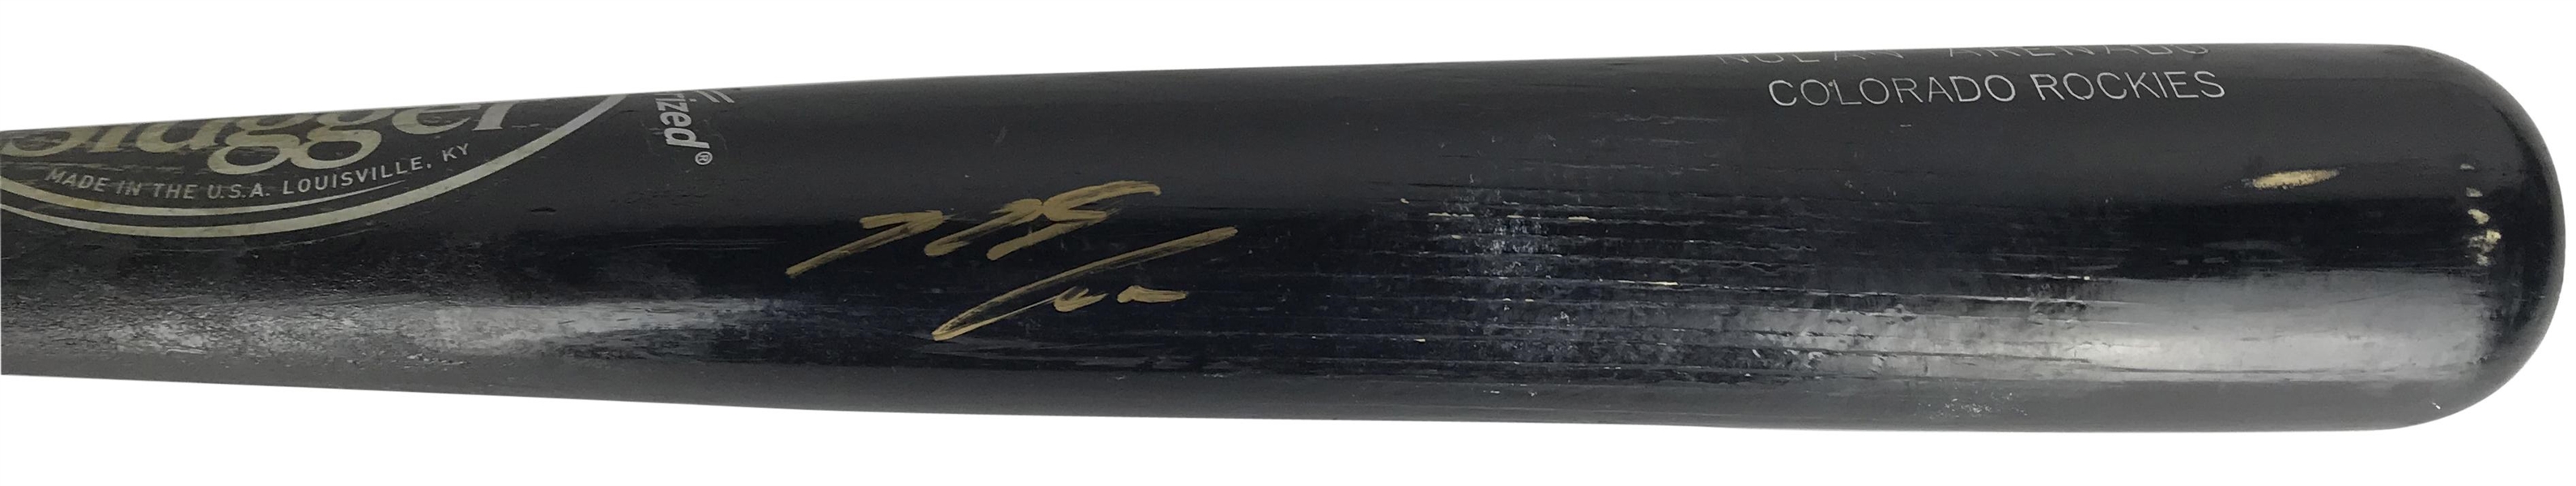 Nolan Arenado Game Used & Signed 2015 C271 Baseball Bat (PSA/DNA GU 10)